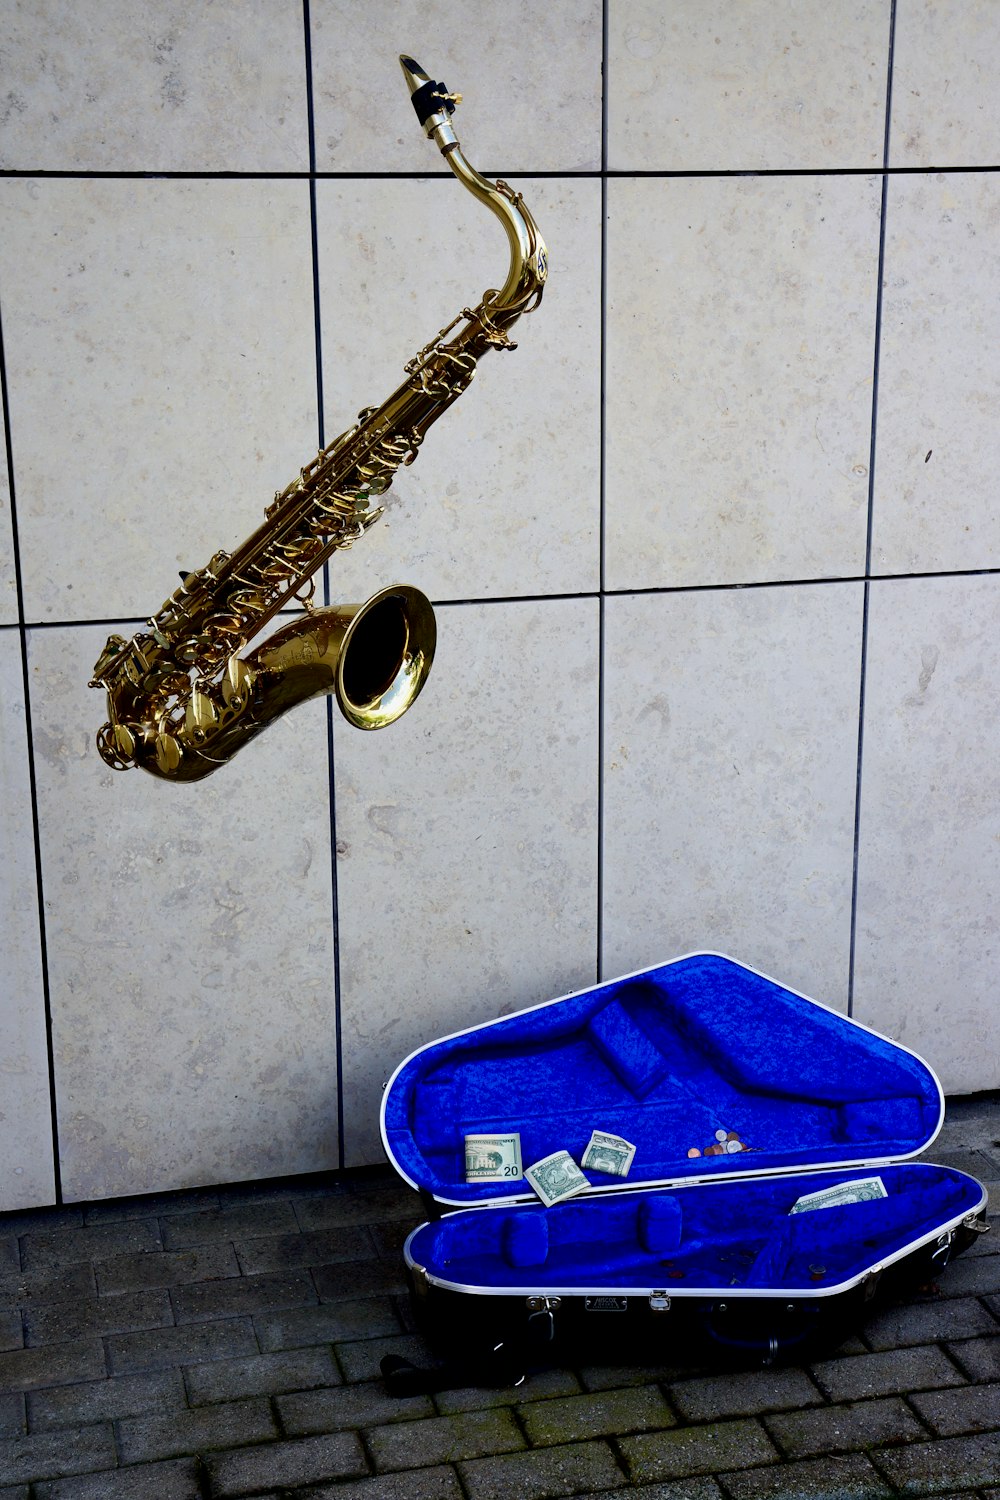 saxofone de metais no recipiente de plástico azul